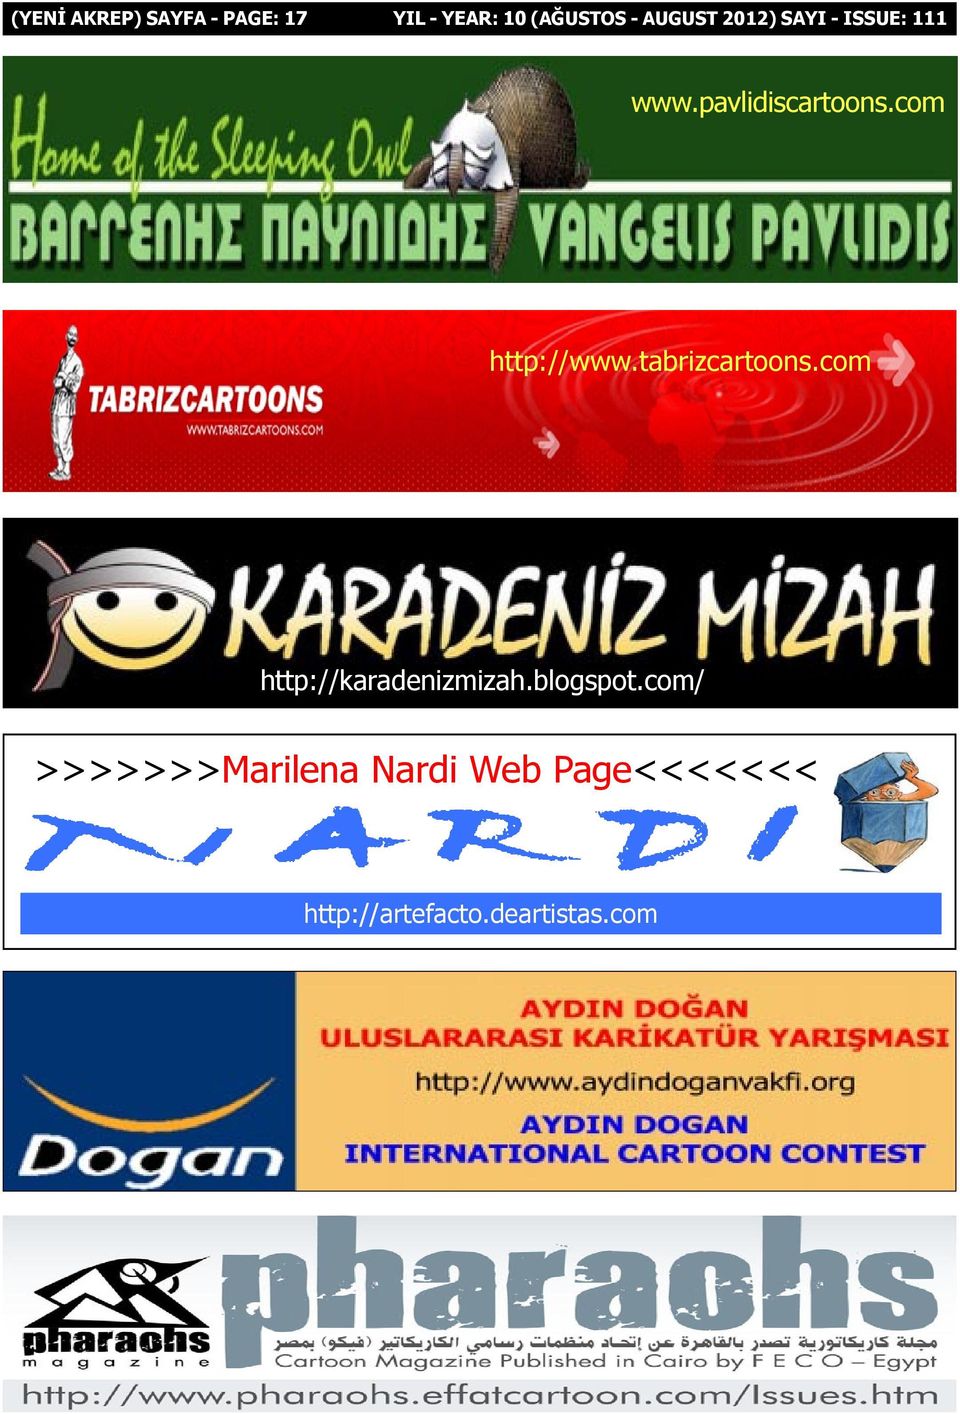 com http://www.tabrizcartoons.com http://karadenizmizah.